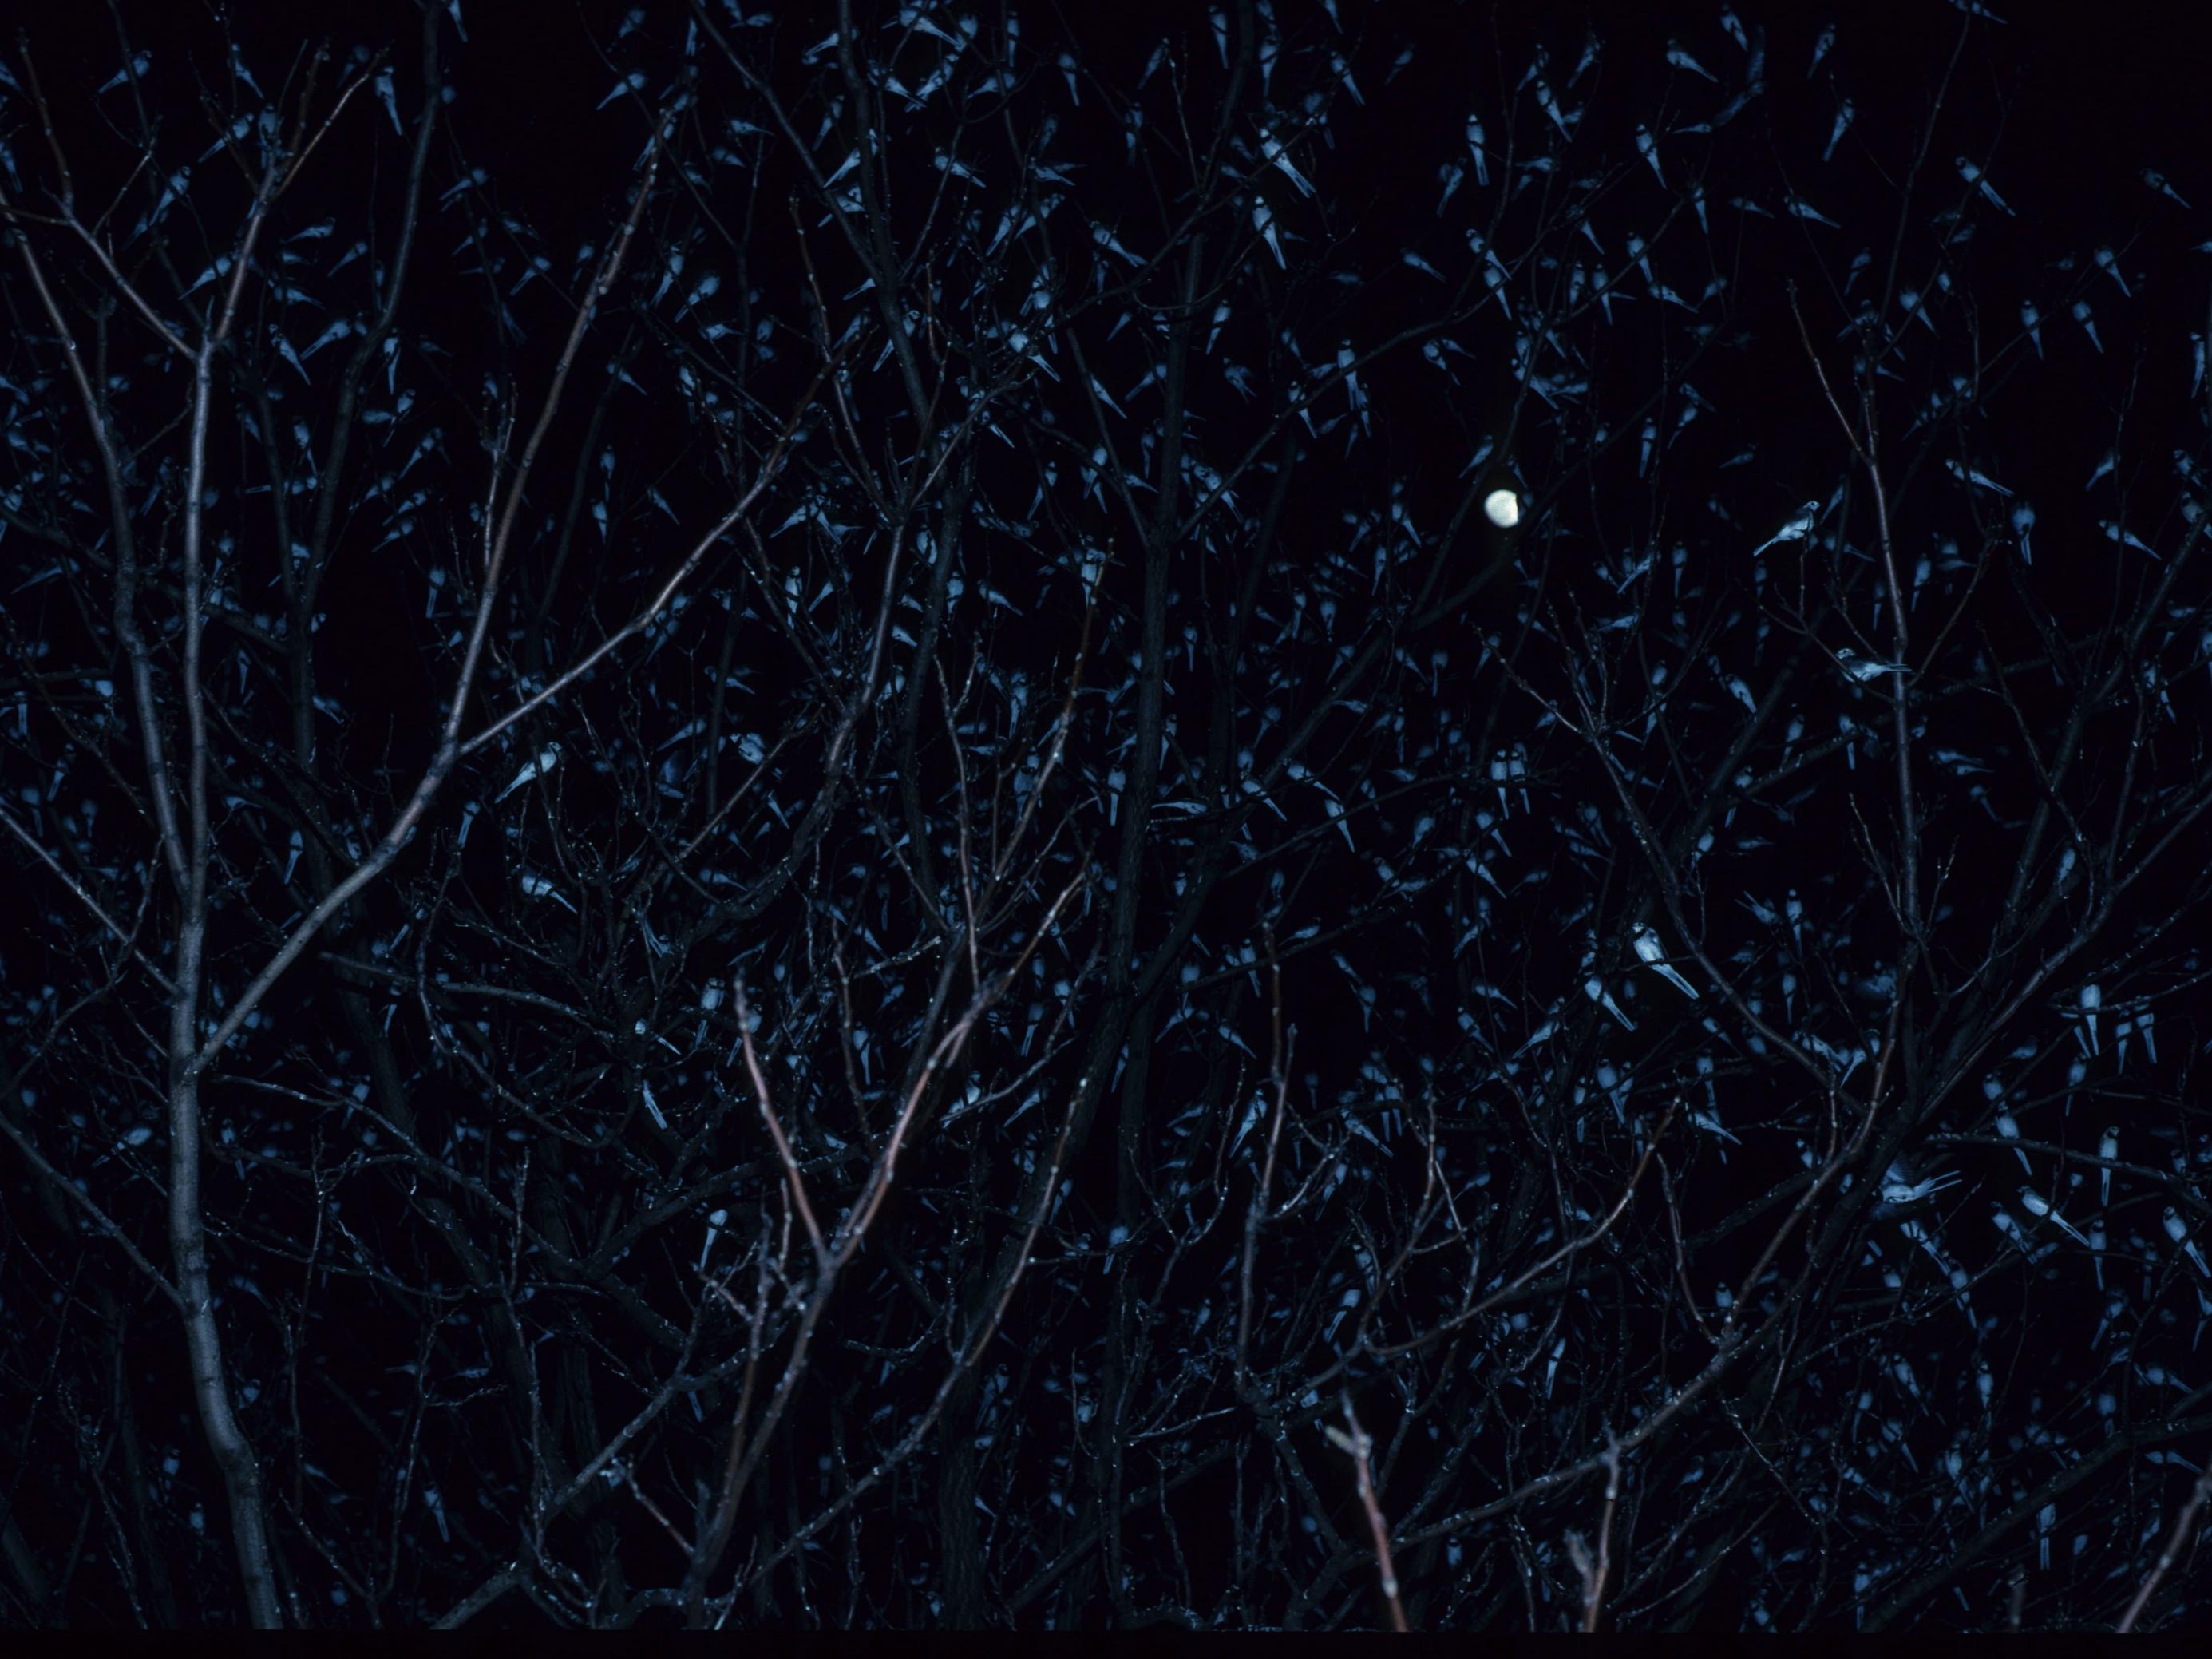 Das Bild zeigt einen Baum in finsterer Nacht, in dem als kleine Punkte Bachstelzen zu sehen sind, die sich nachts in diesem Baum sammeln.